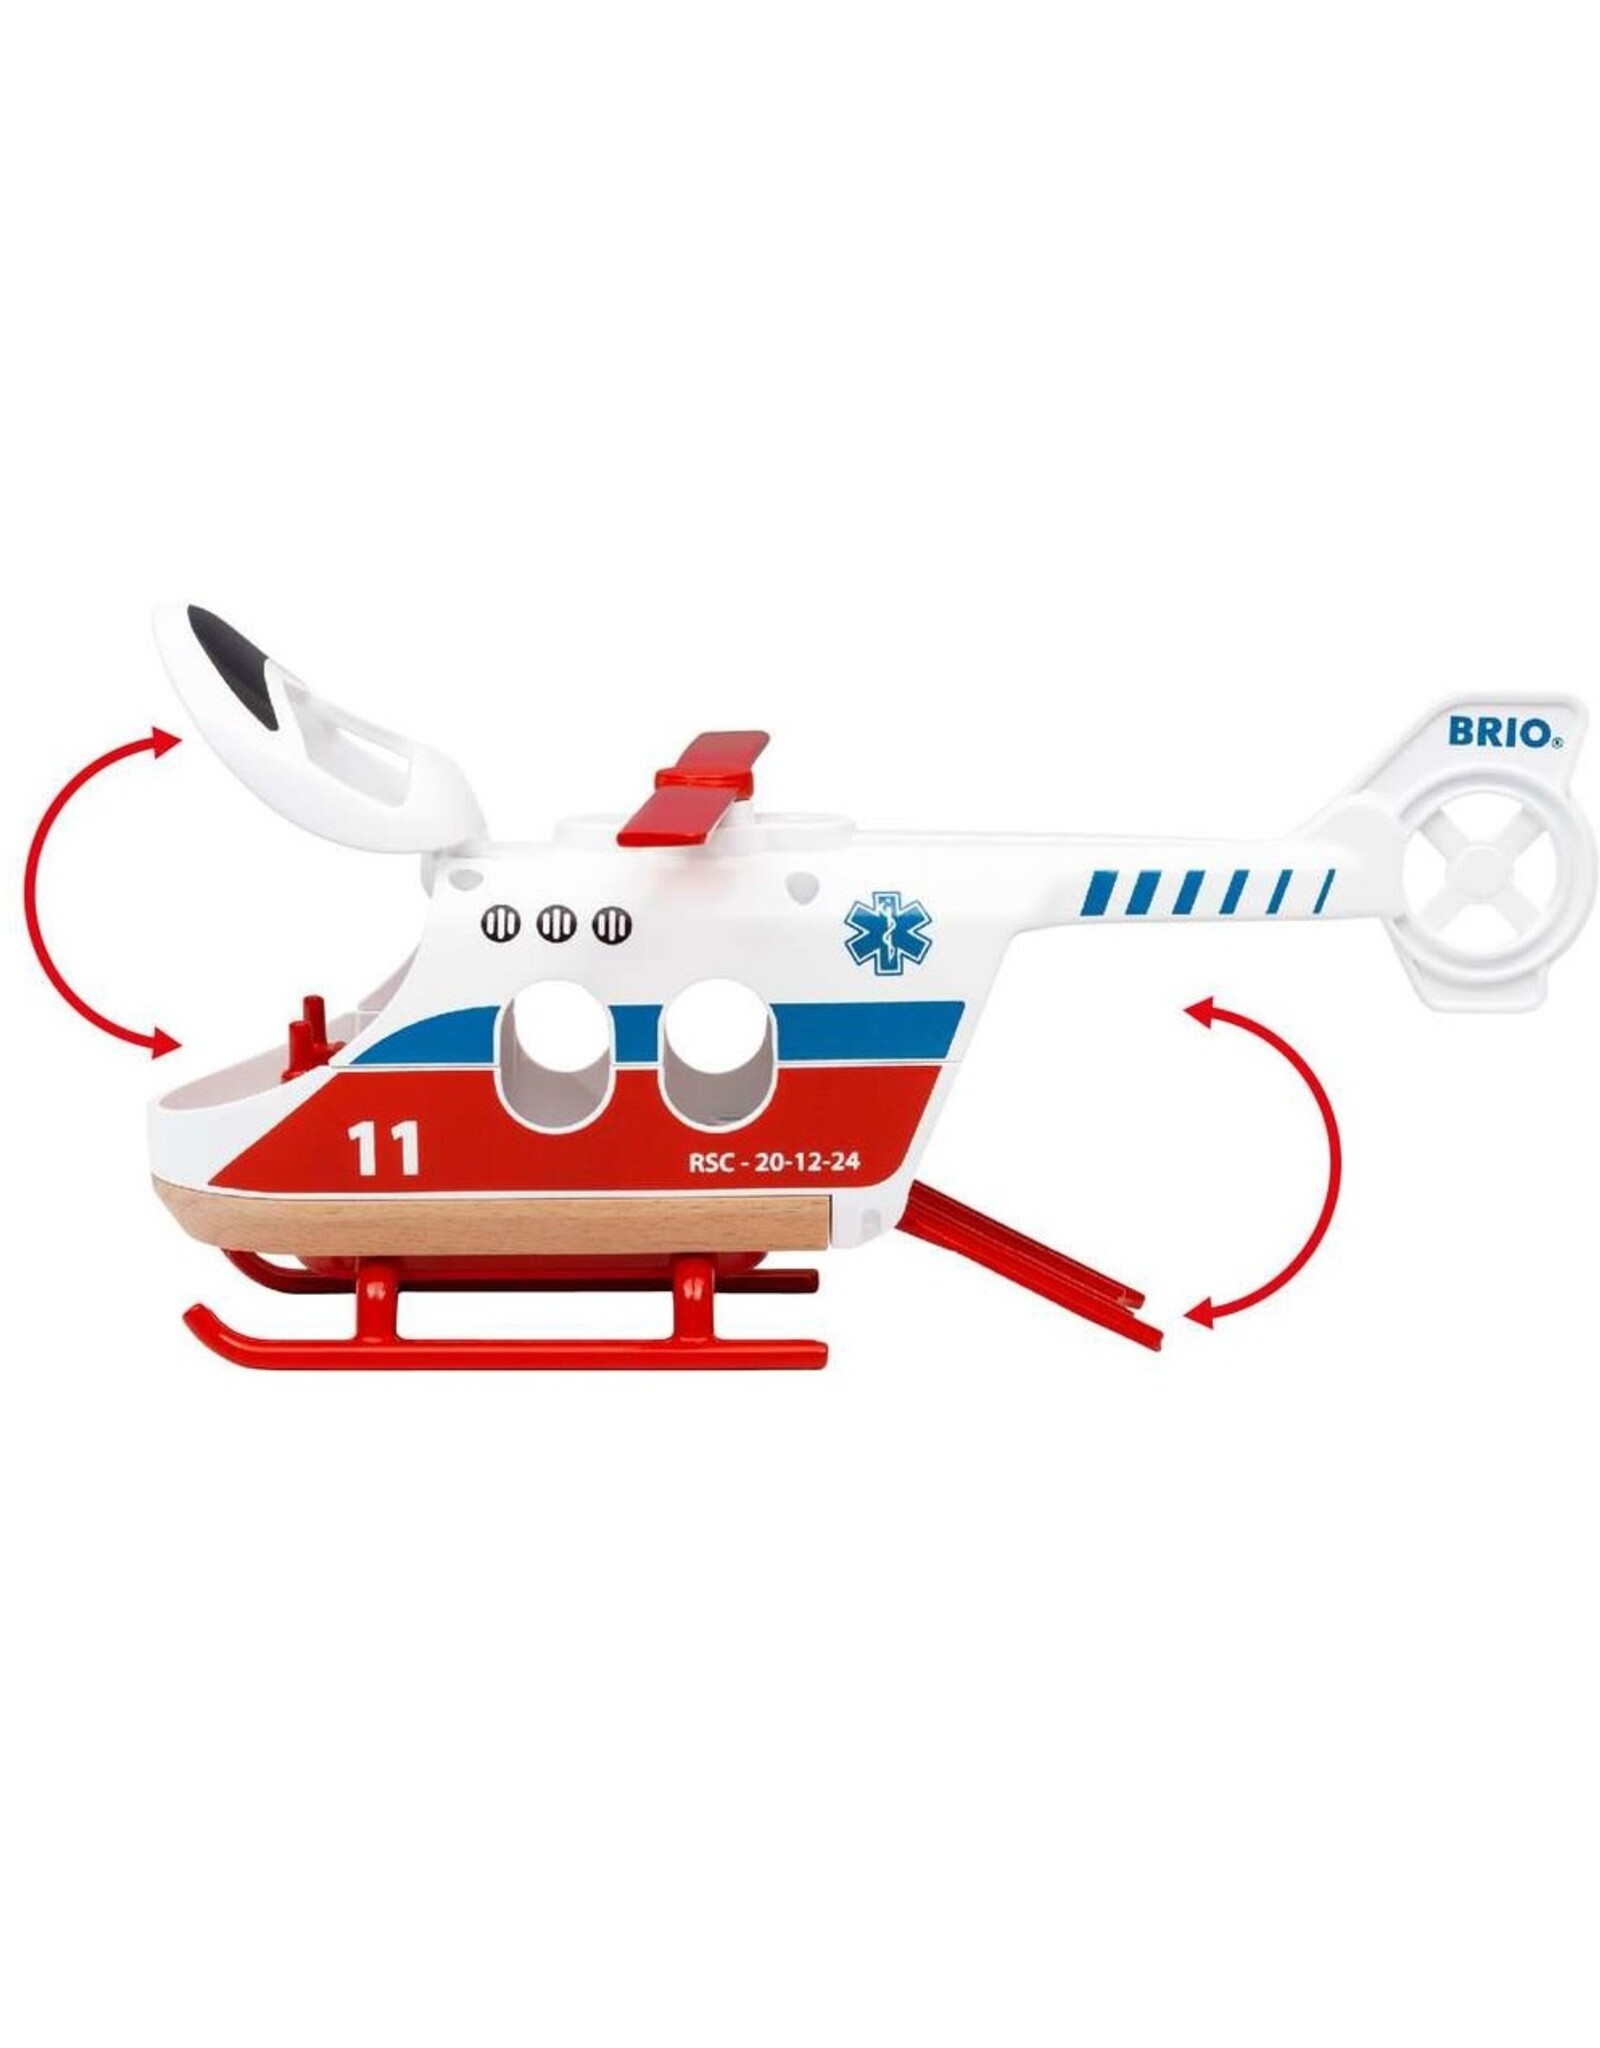 Brio Rescue helicopter